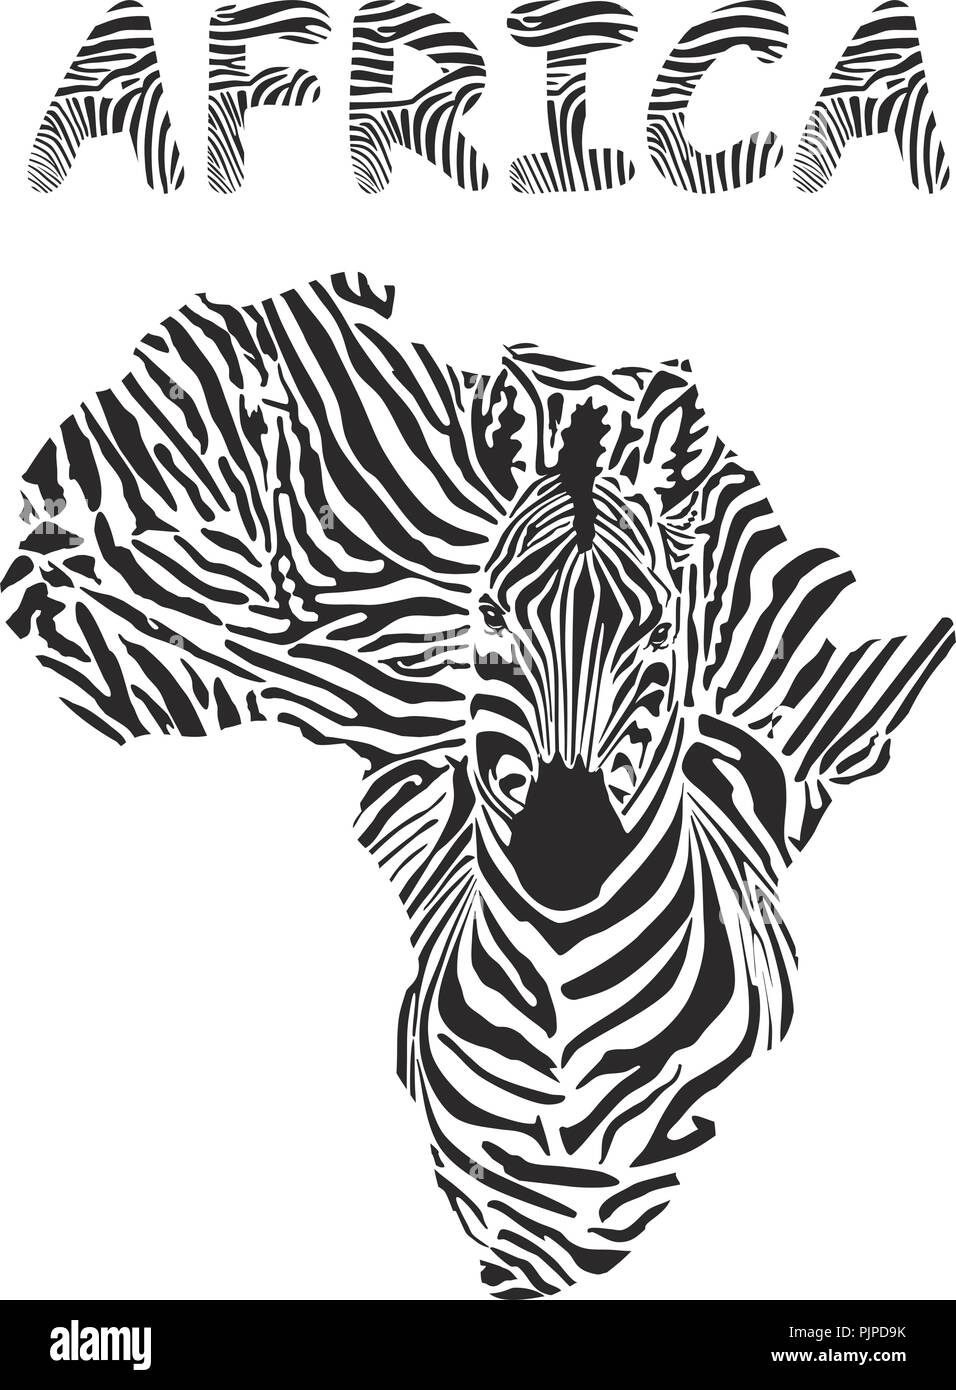 Silhouette Mappa di Africa con la testa di zebra Illustrazione Vettoriale